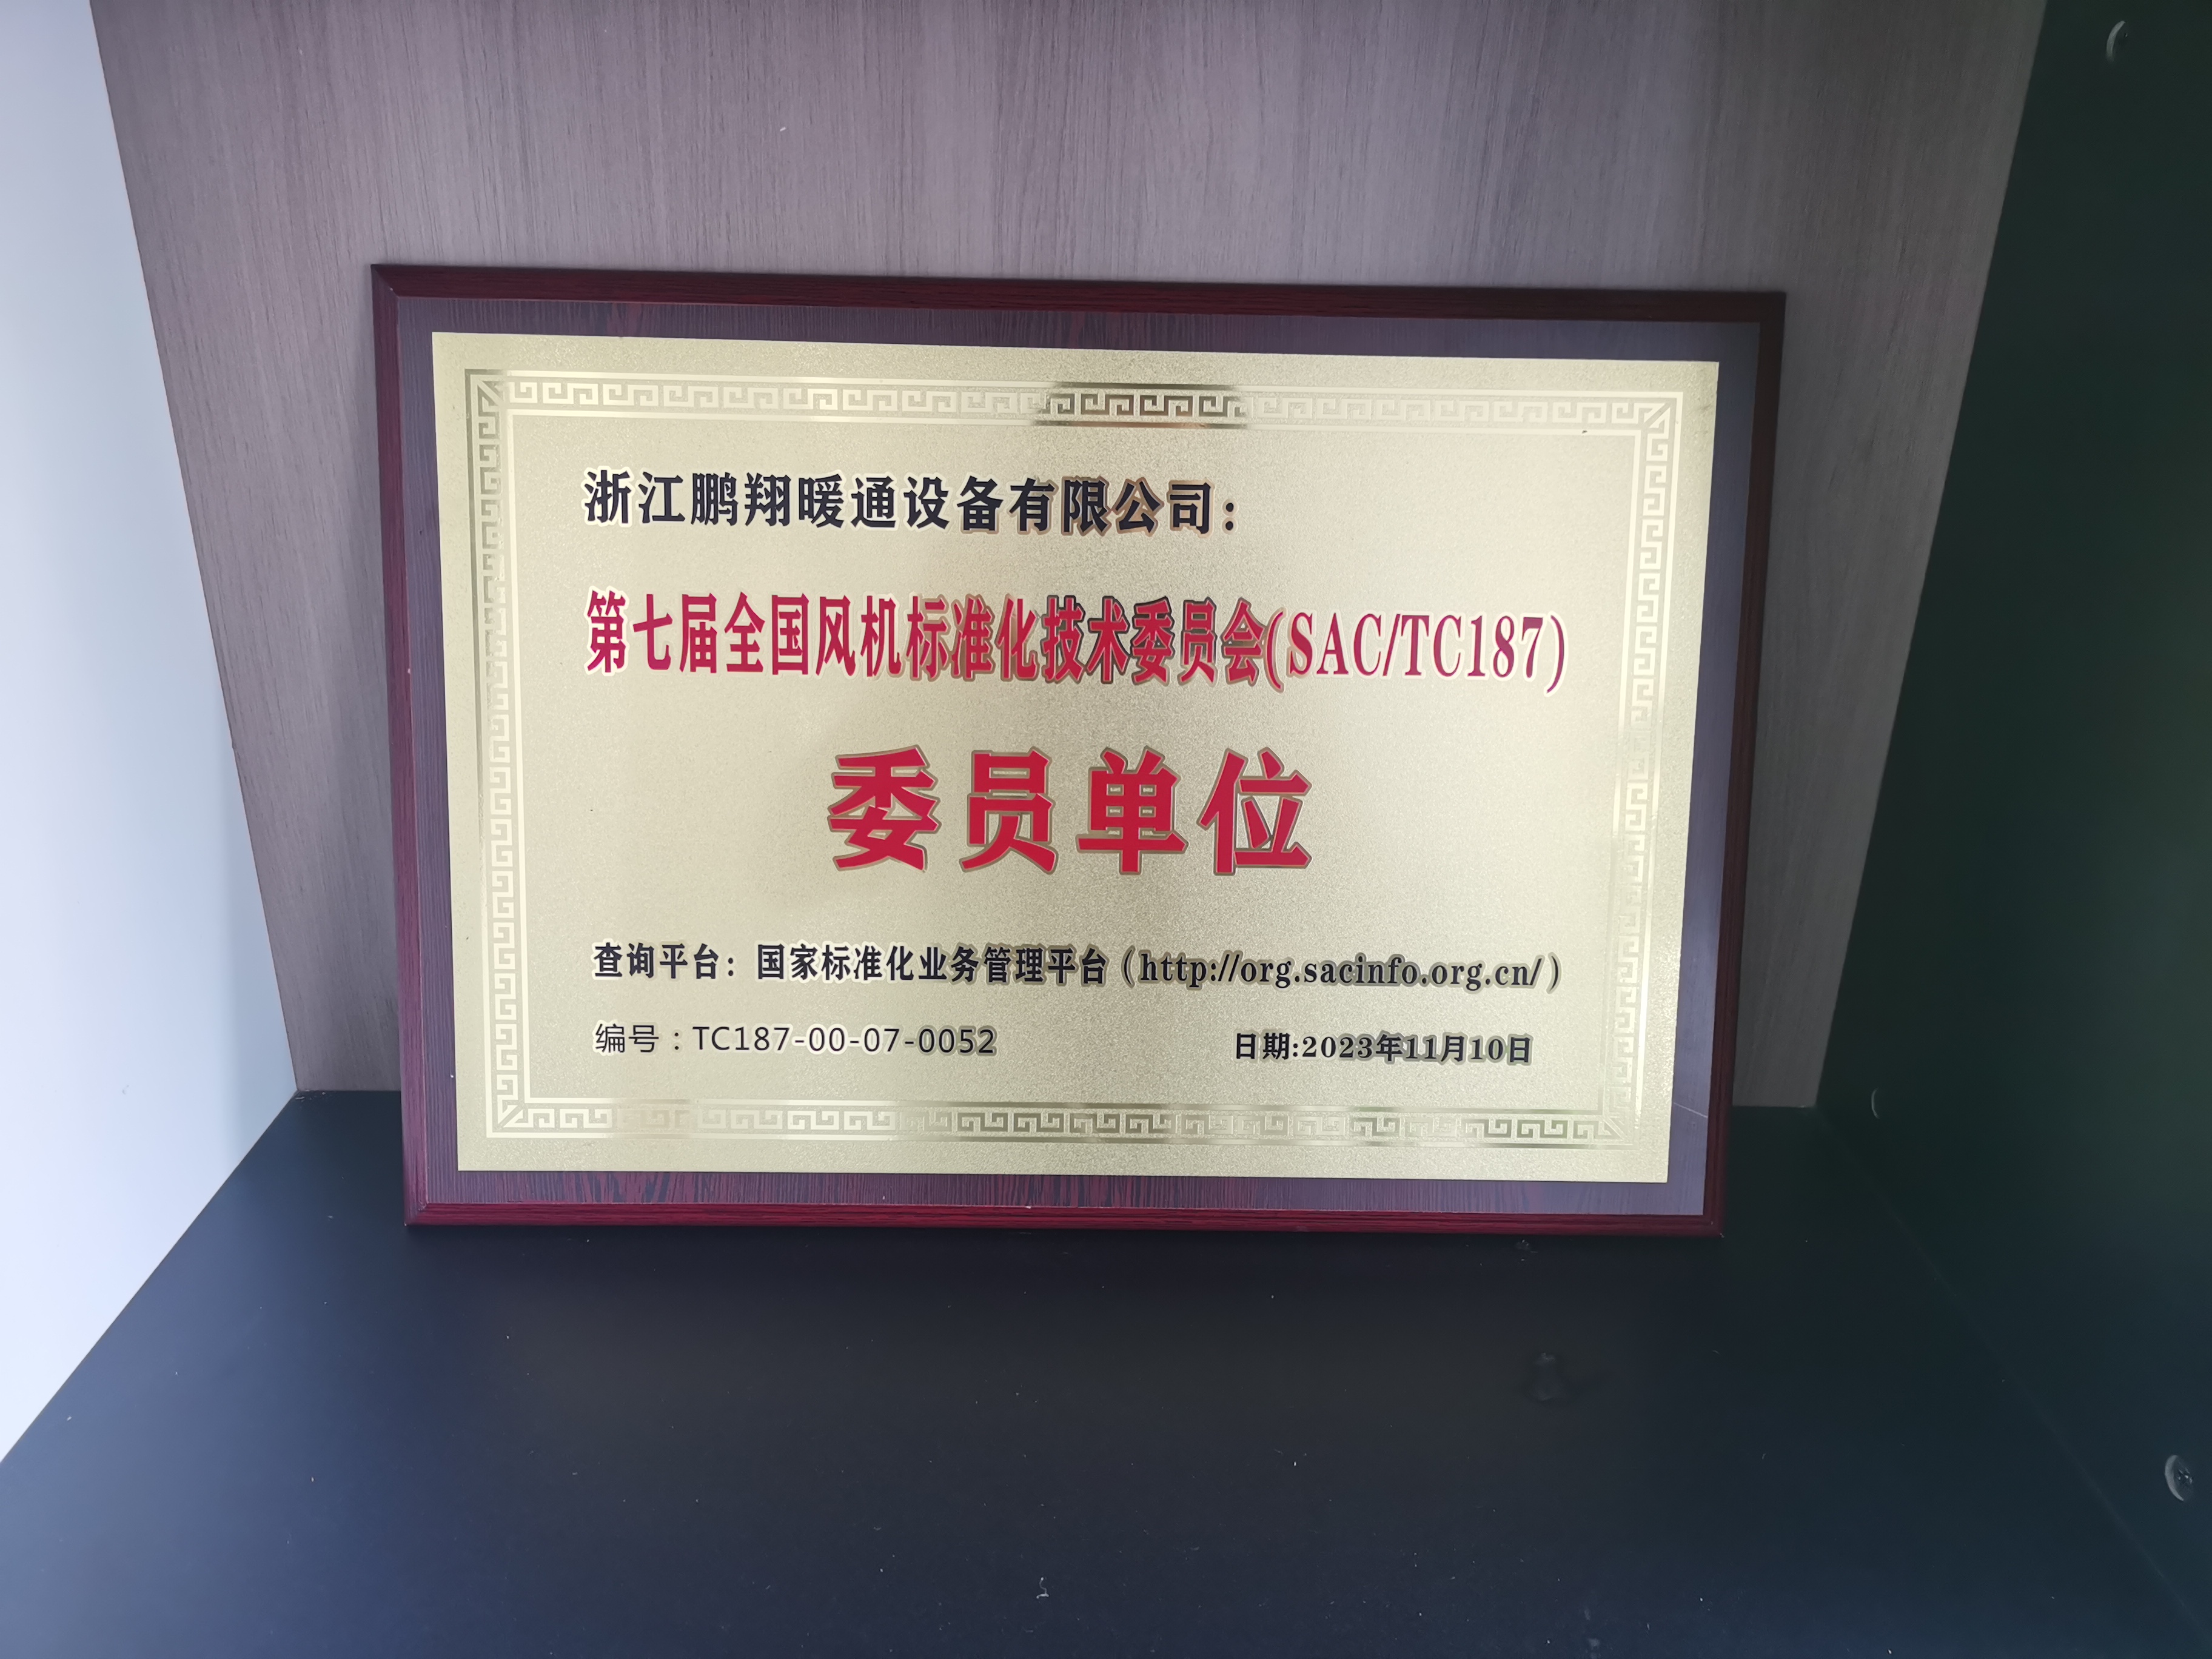 L'équipe technologique des machines à papier VALMET attribue la note la plus élevée à Zhejiang Pengxiang HVAC Equipment Co., Ltd. lors de l'inspection d'audit annuelle